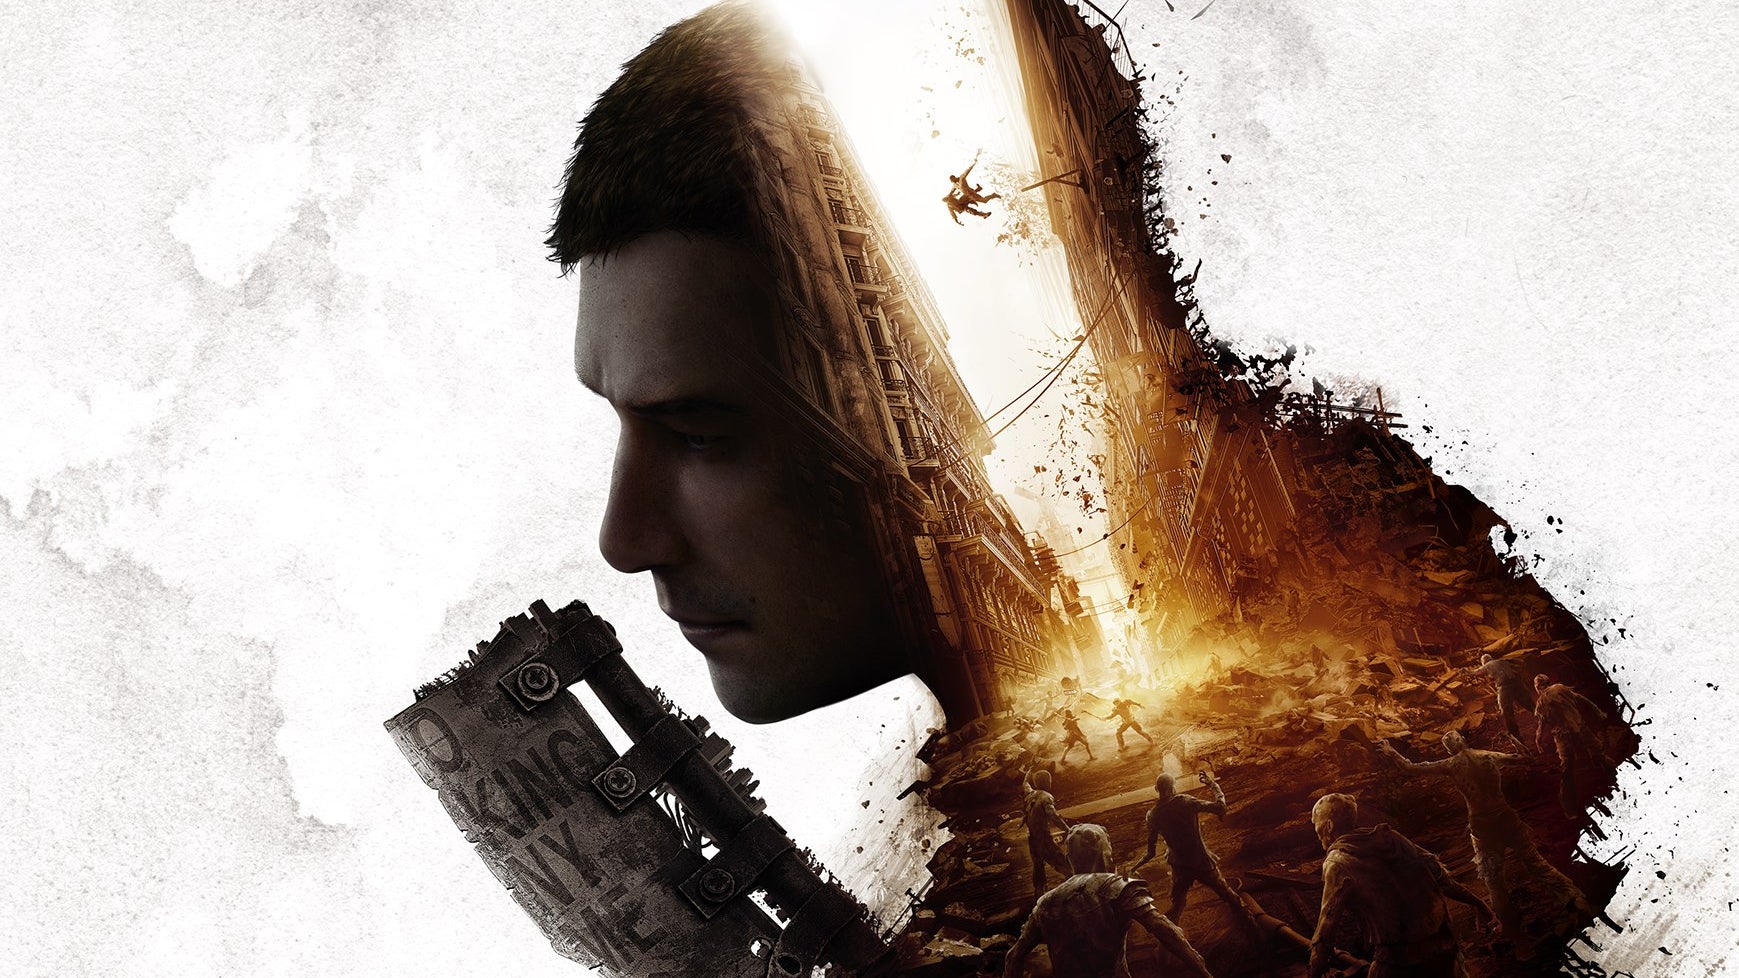 Imagen para Dying Light 2 tendrá actualización gratuita de PS4/One a PS5/Xbox Series